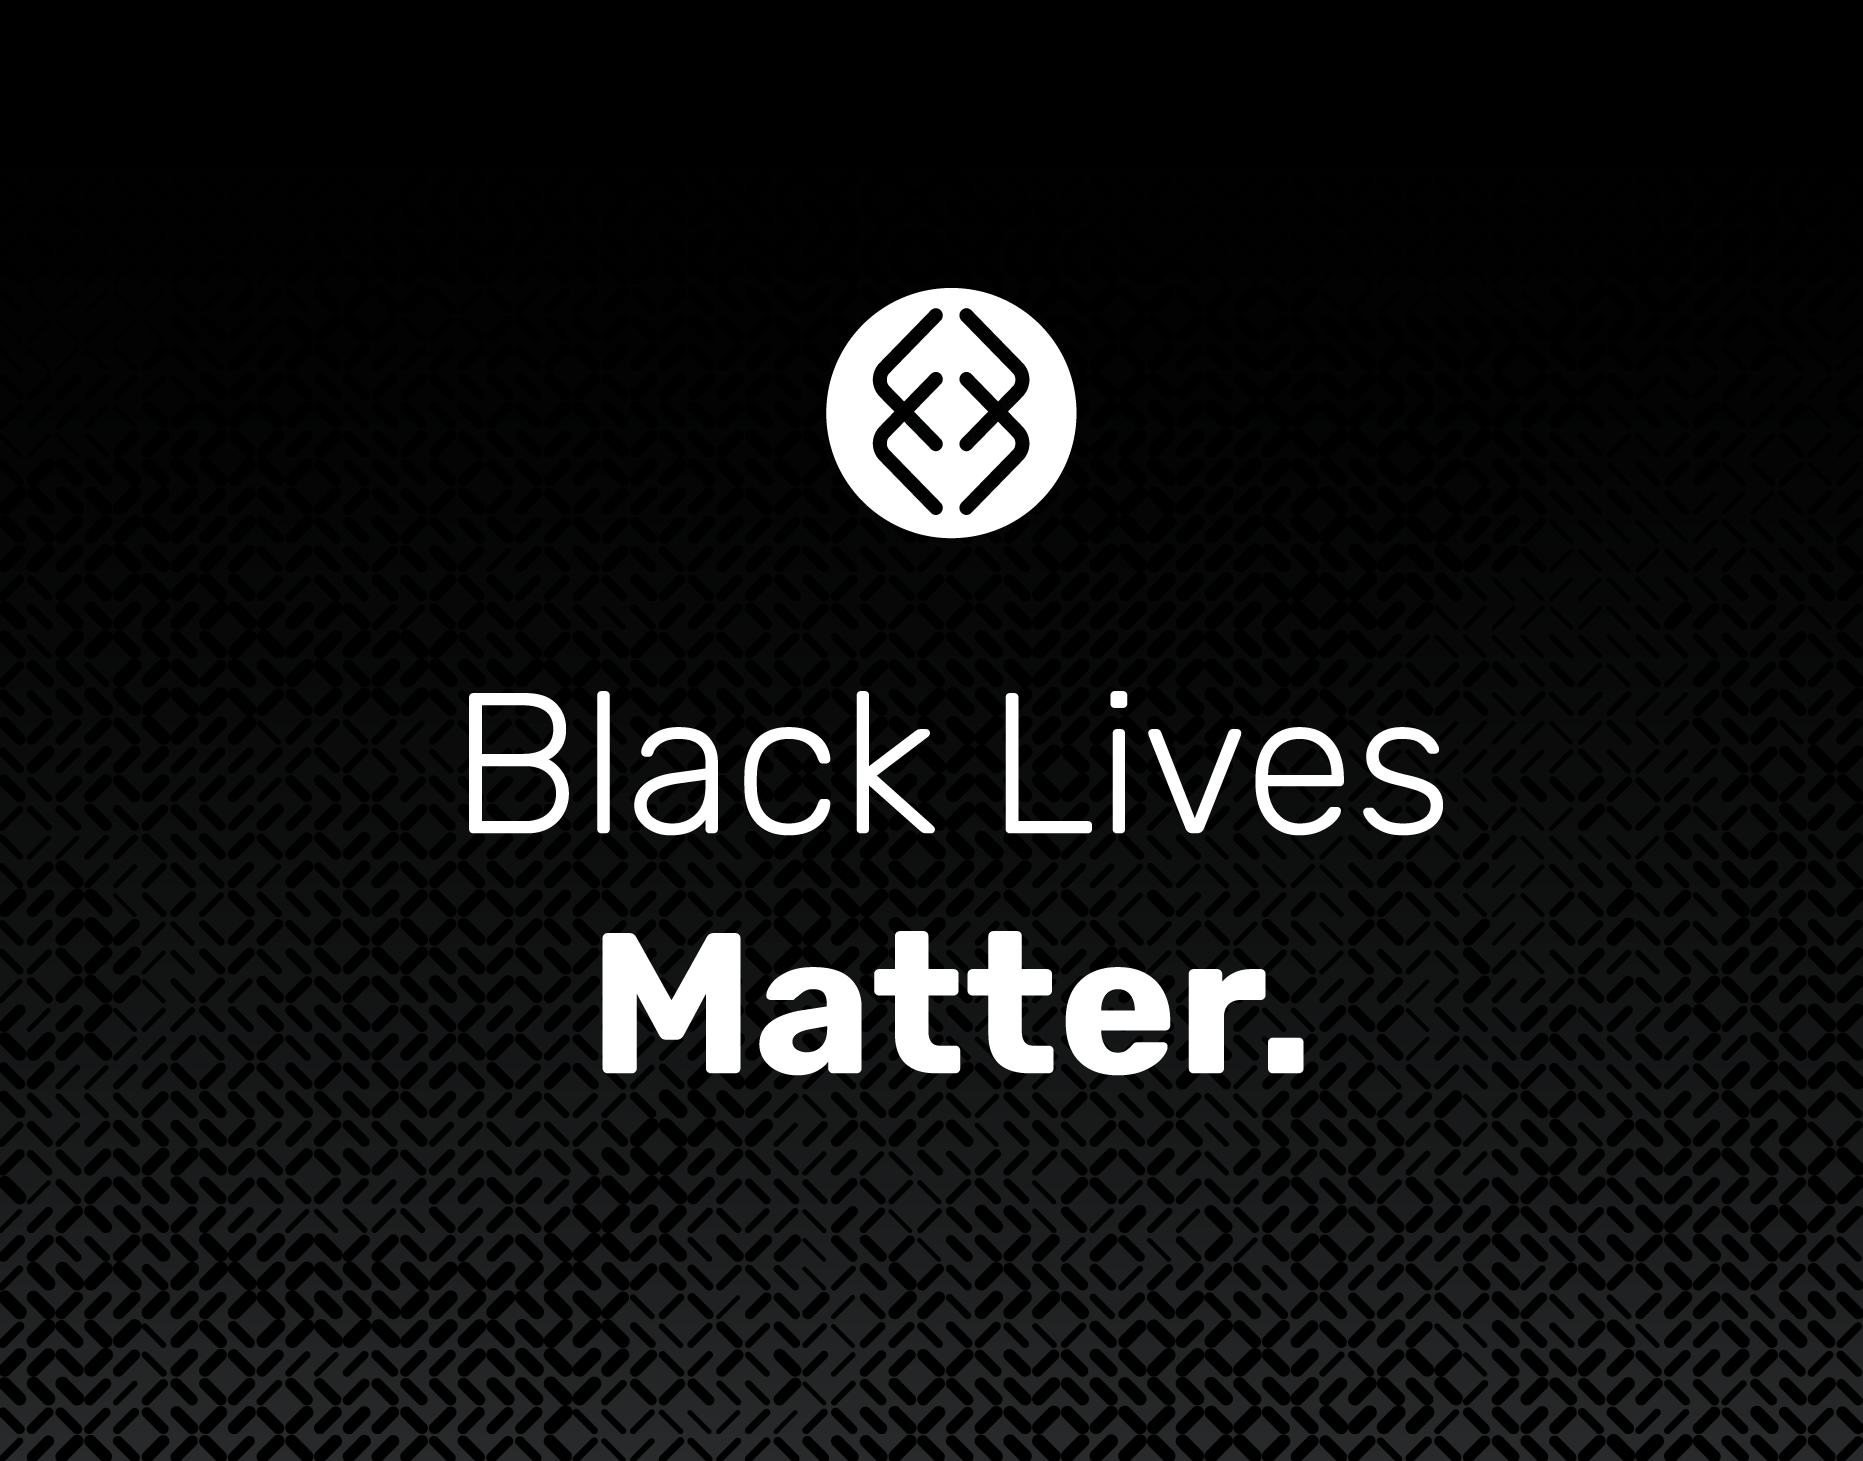 Black Lives Matter. Supported at Emulate.